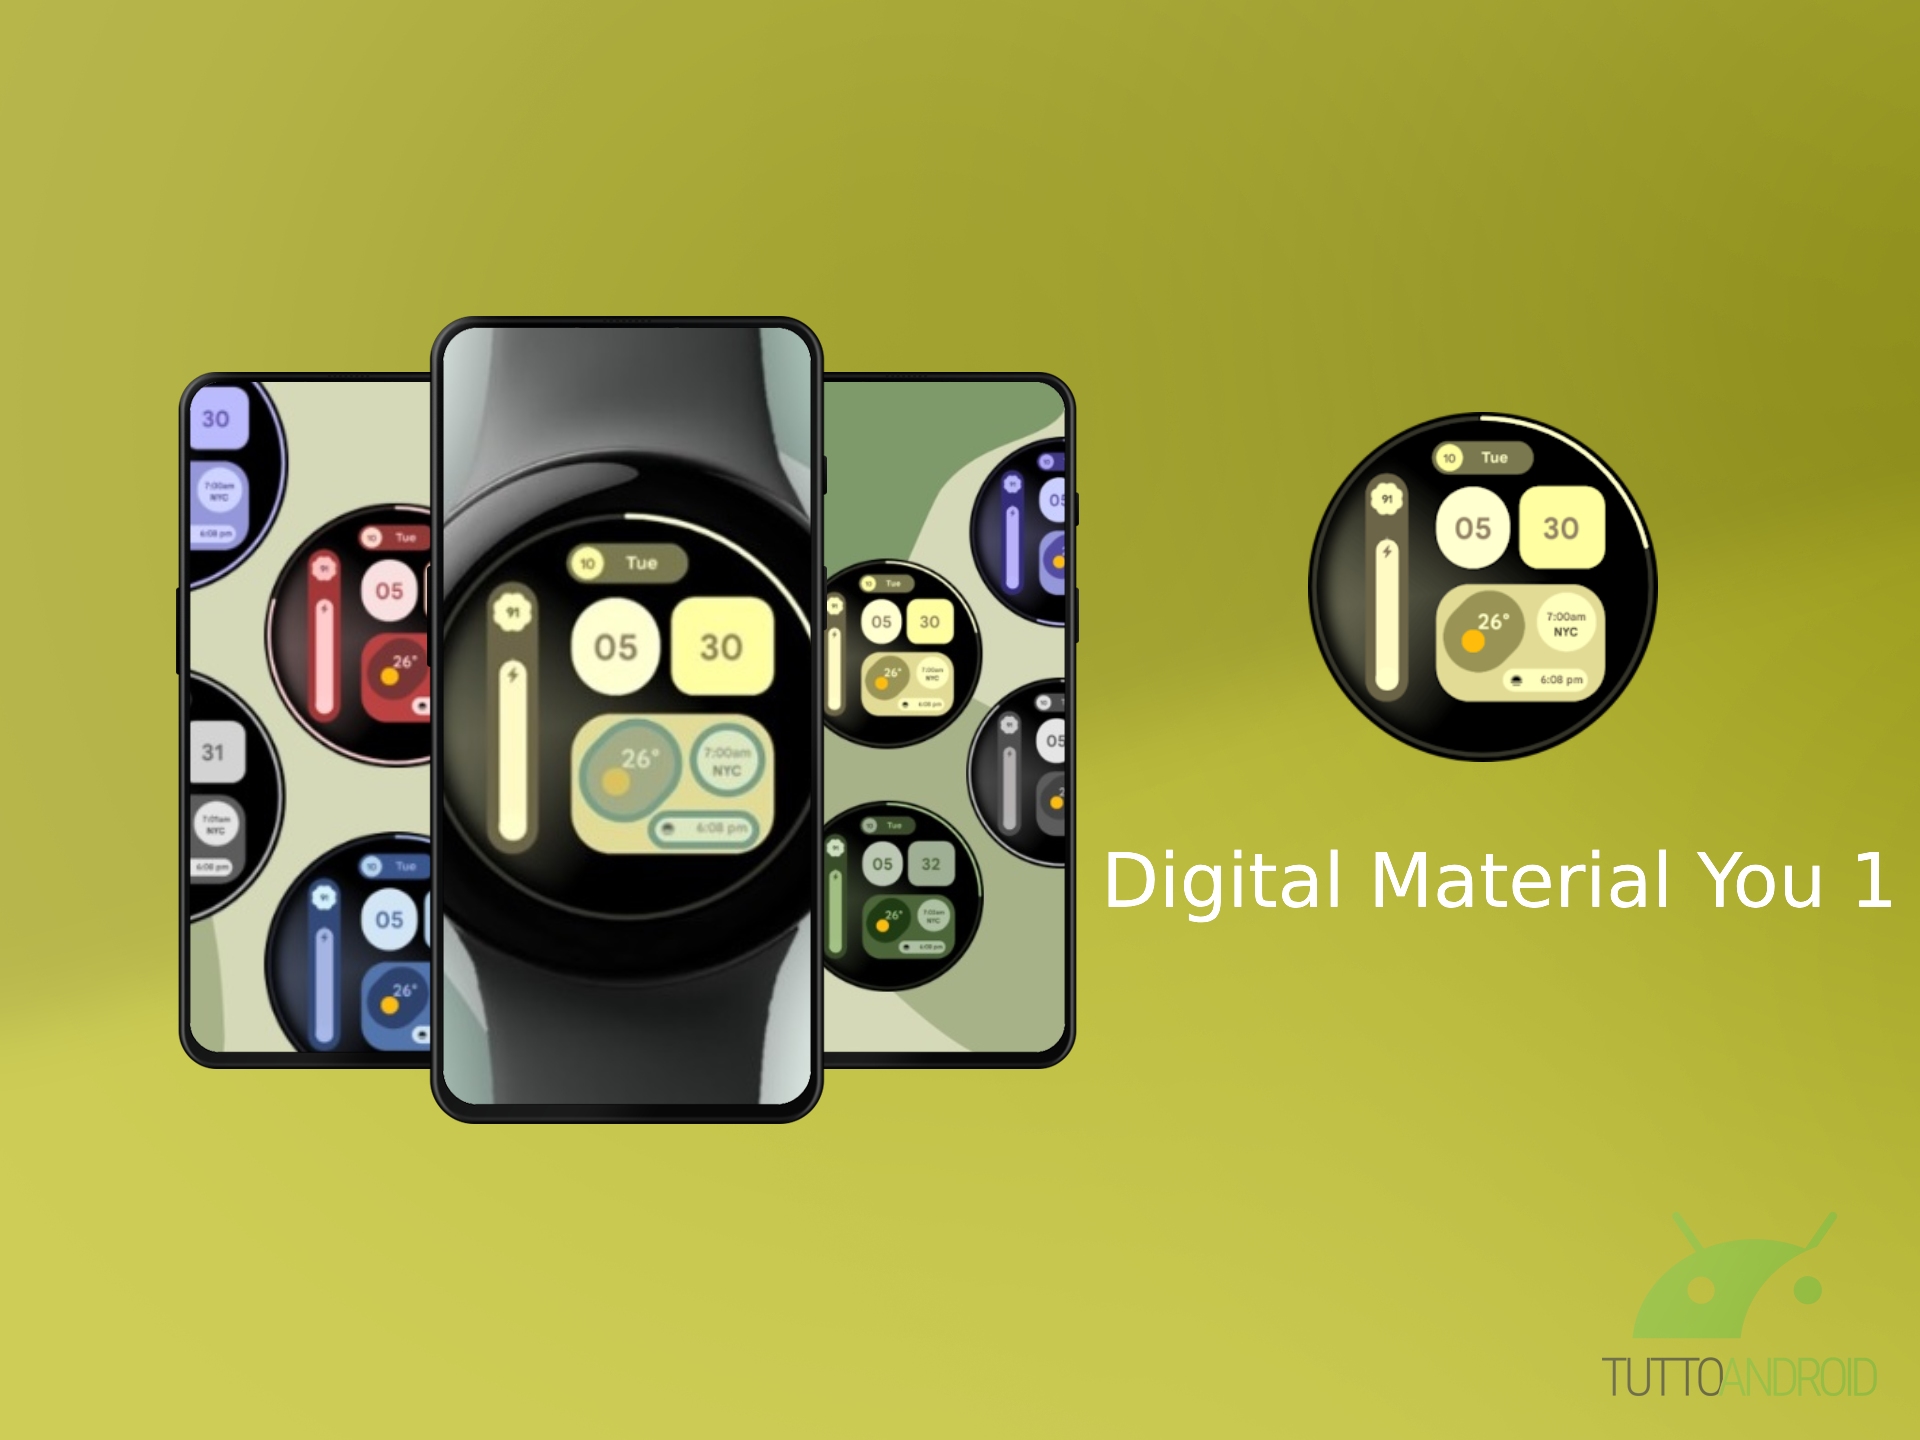 L’app Digital Material You 1 offre una …